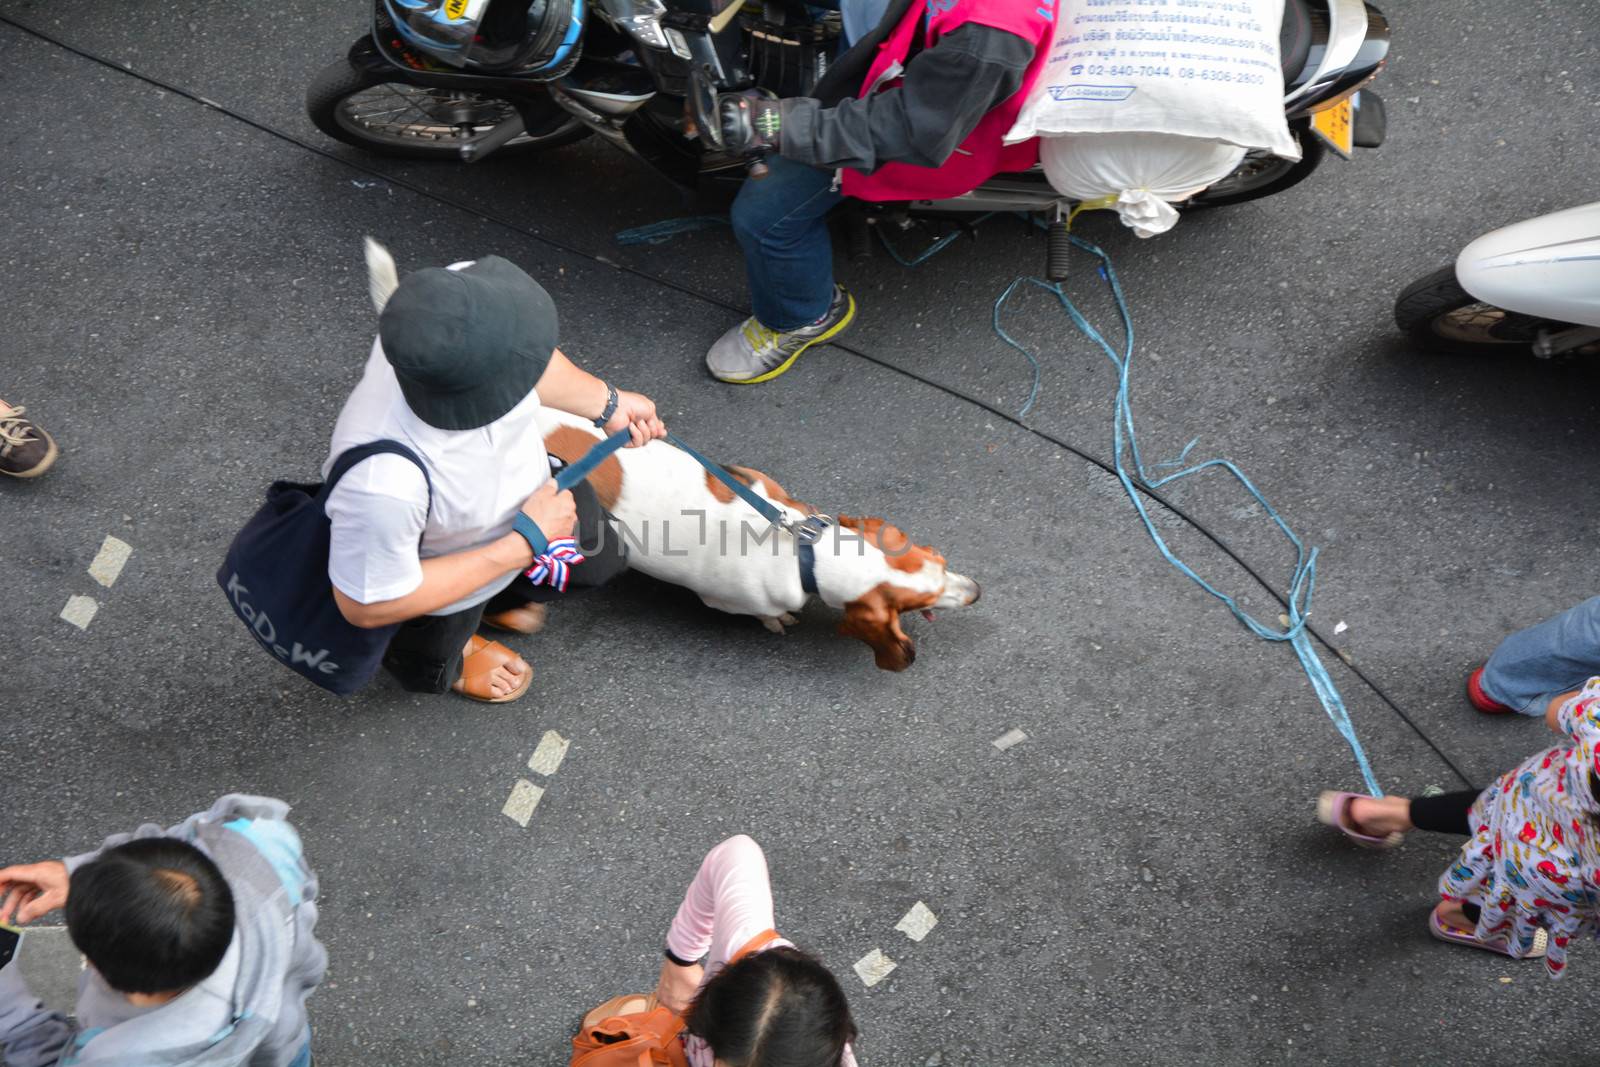 Dog with protester in Bangkok 2014 by frihuttaya